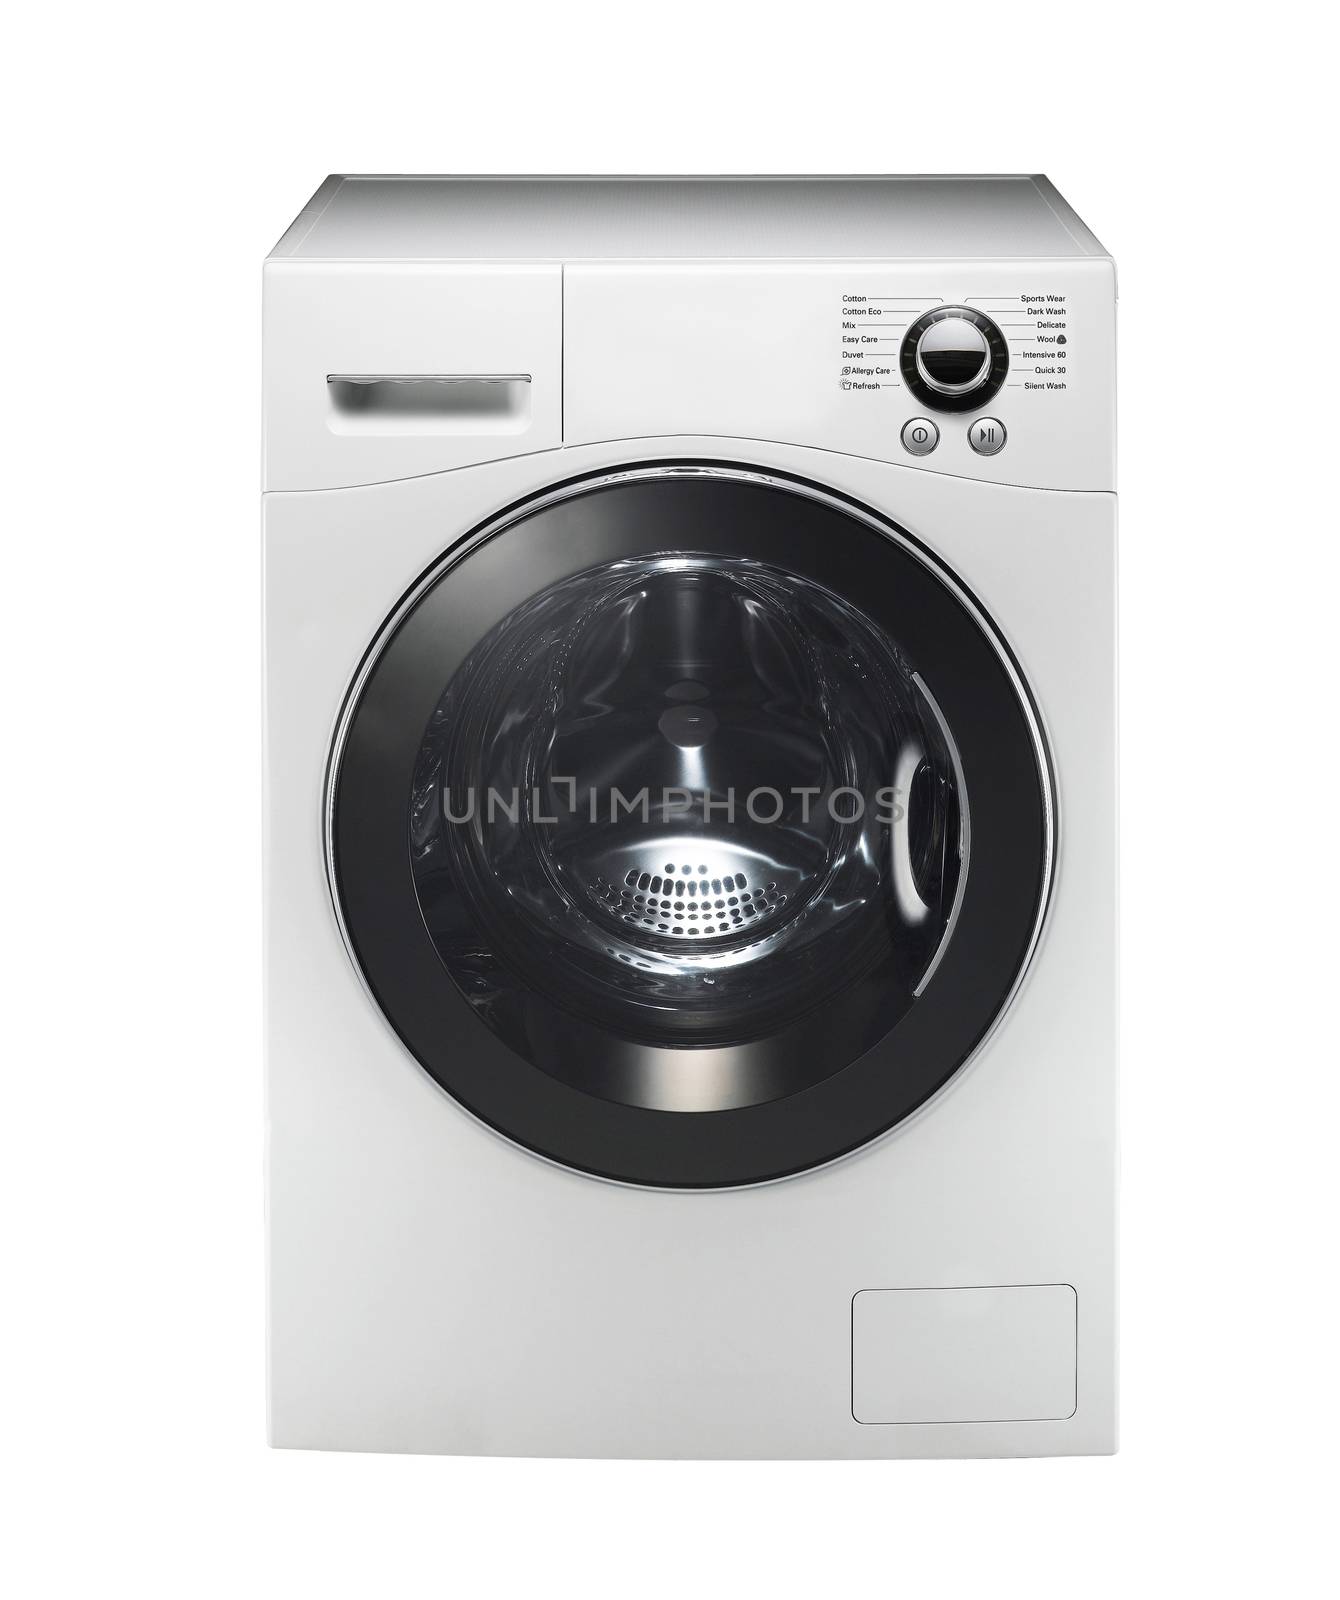 white washing machine isolated on white background